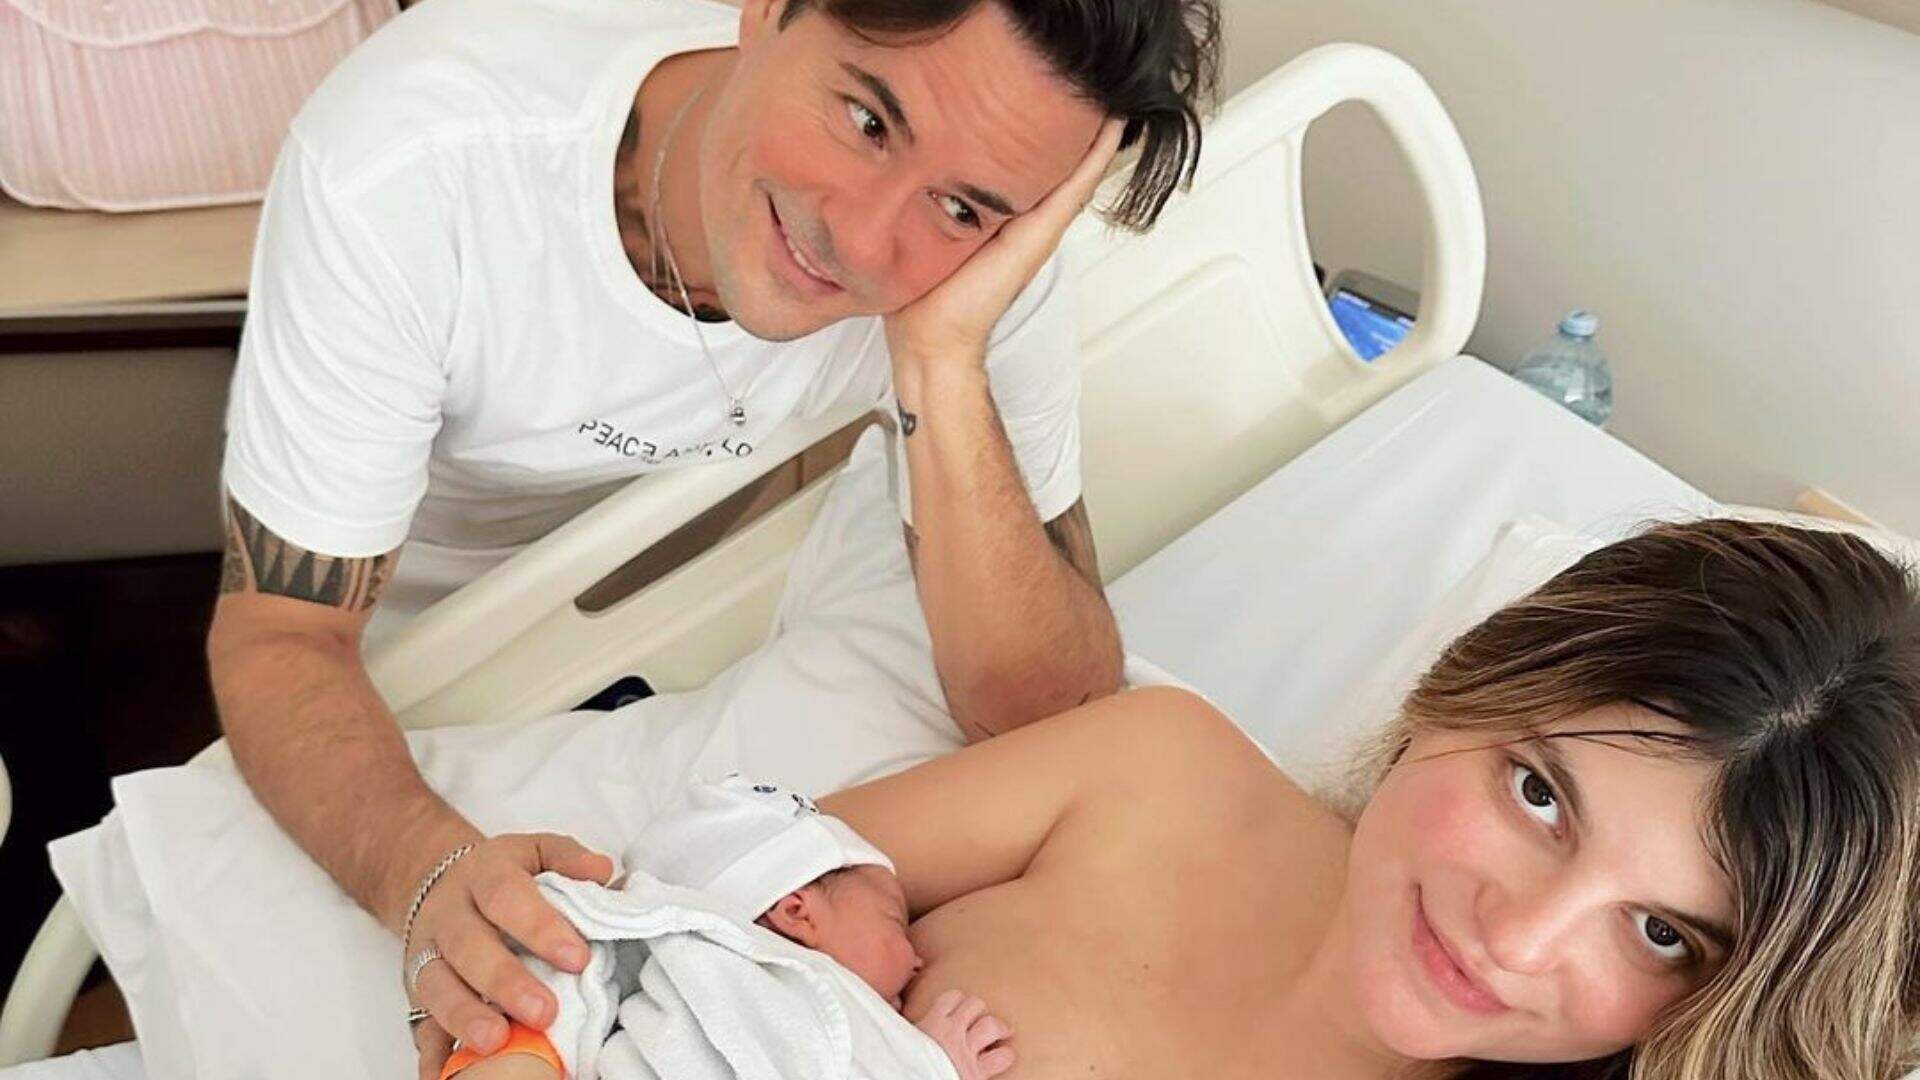 Paulo Vilhena anuncia nascimento de sua primeira filha, Manoela, mostrando o rostinho da pequena na web